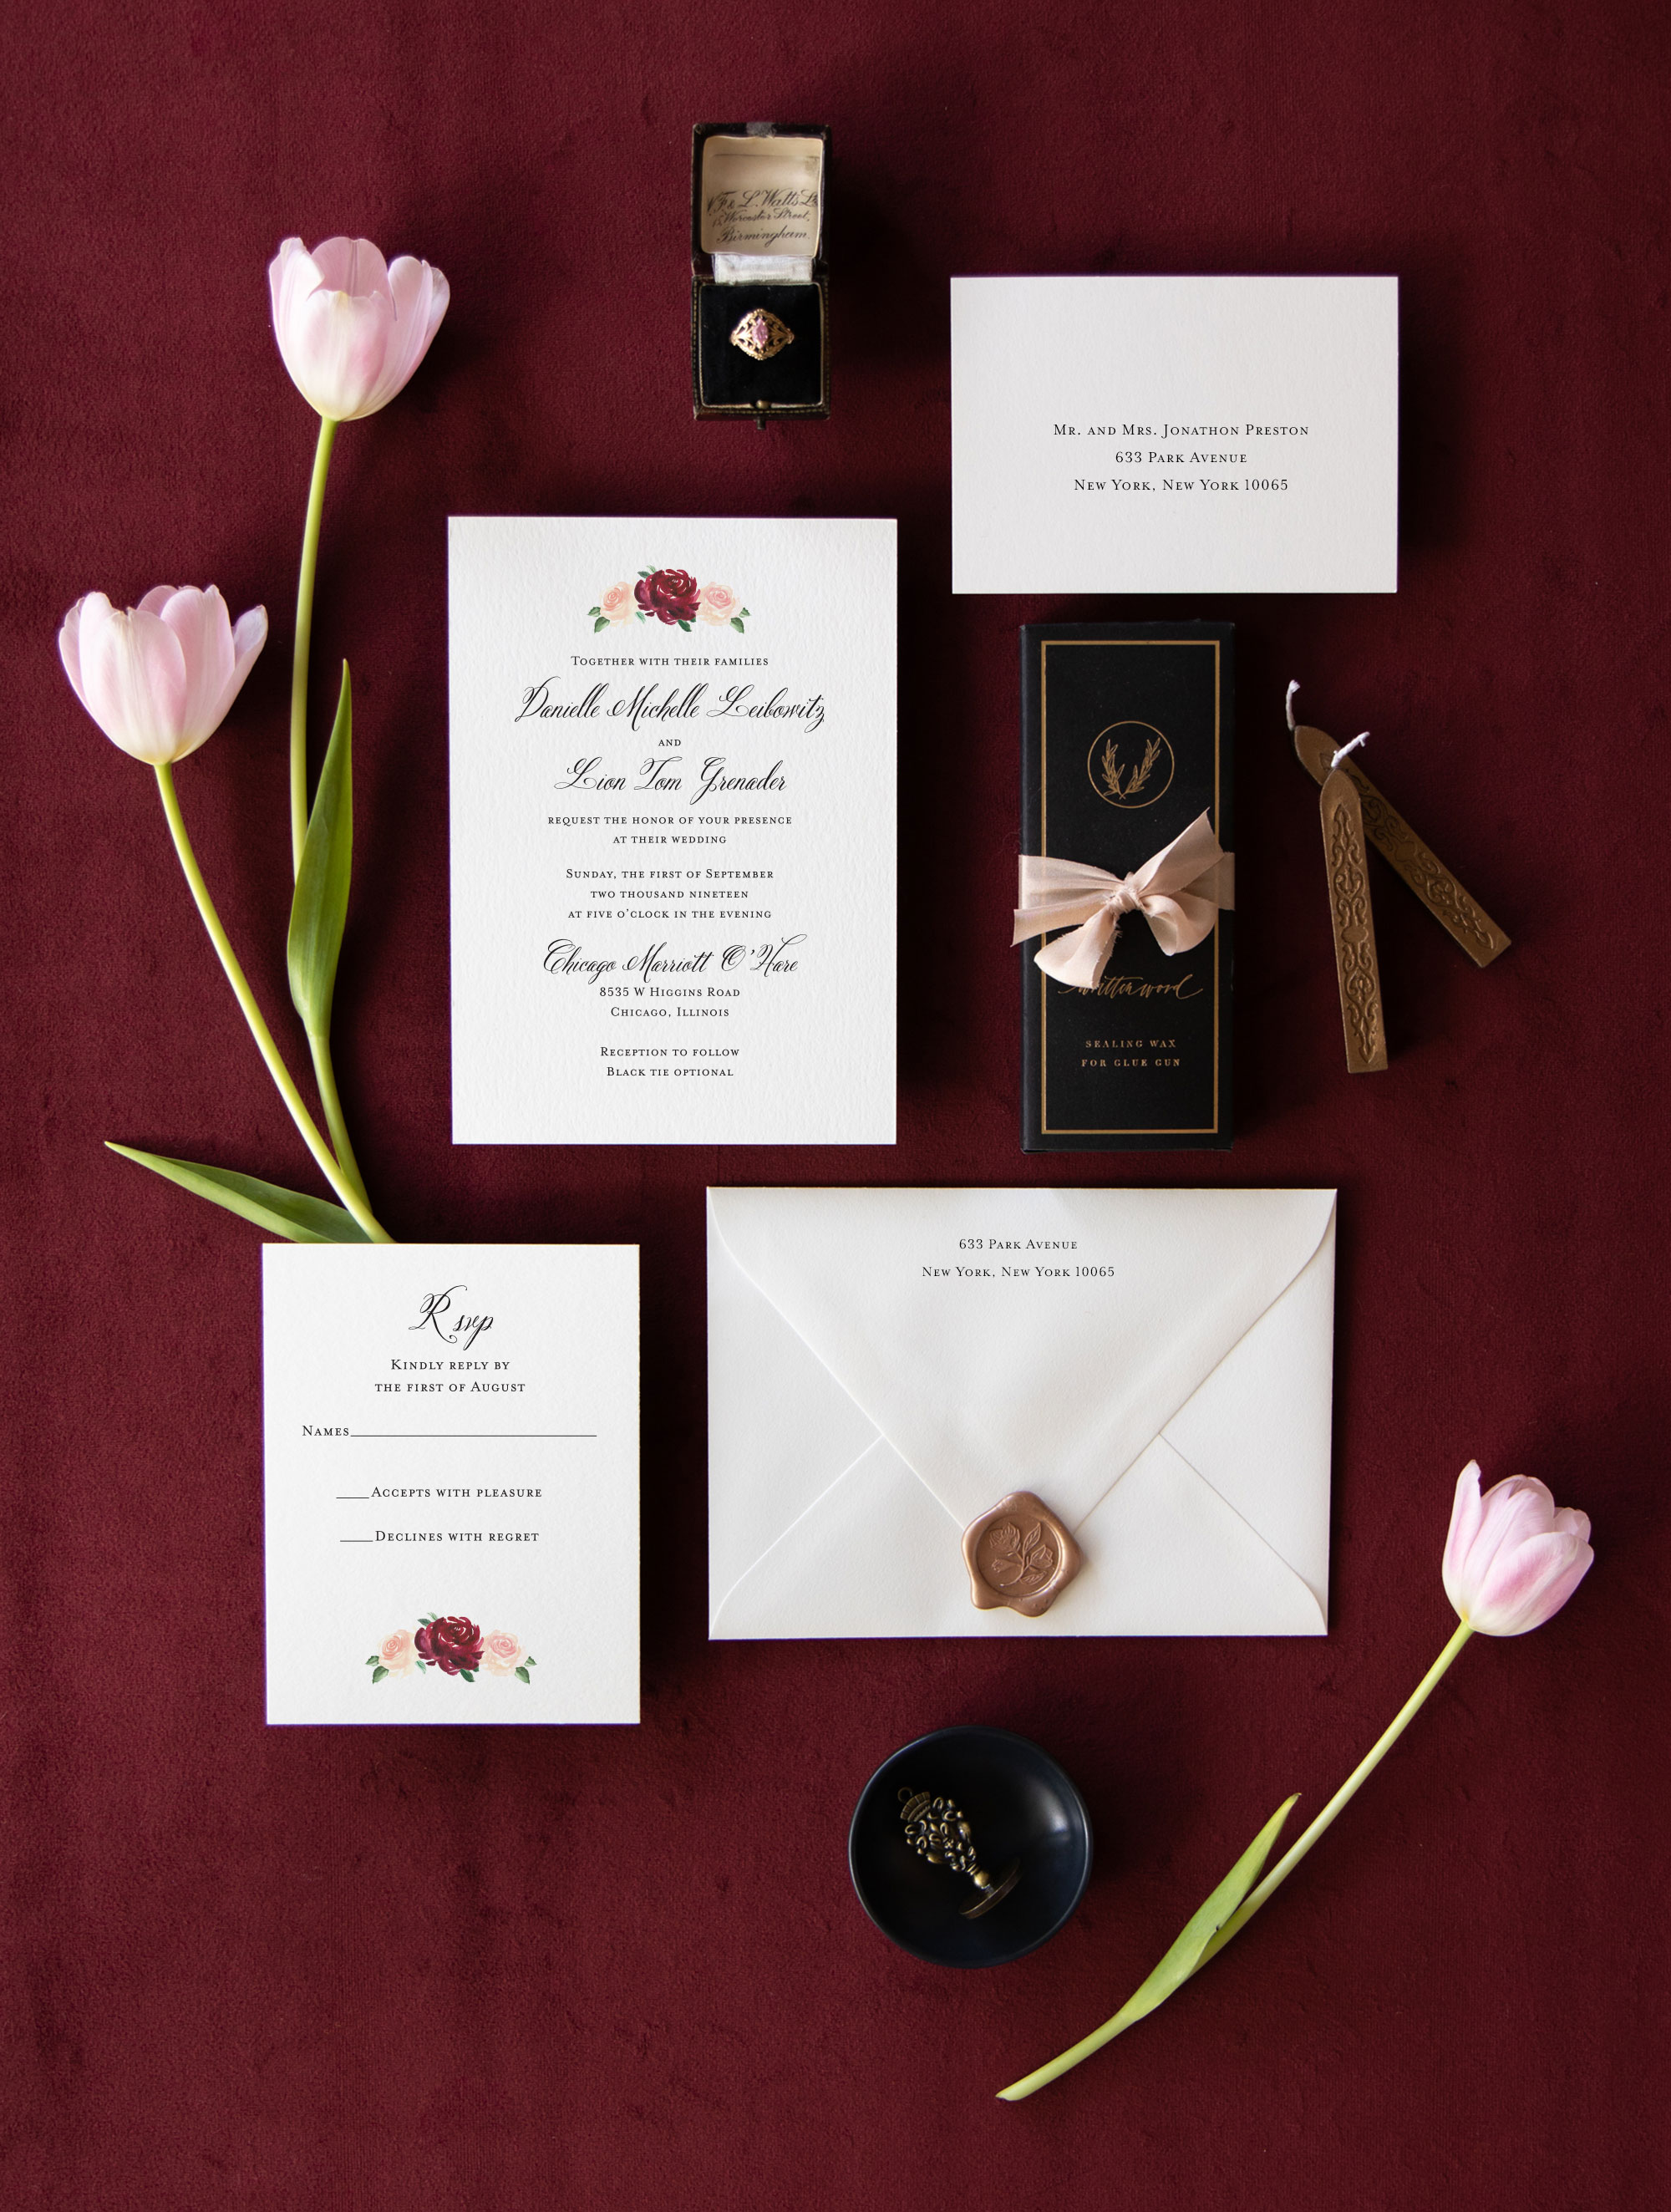 Custom Invitations, Unique Wedding Invitations, 100% Original Designs